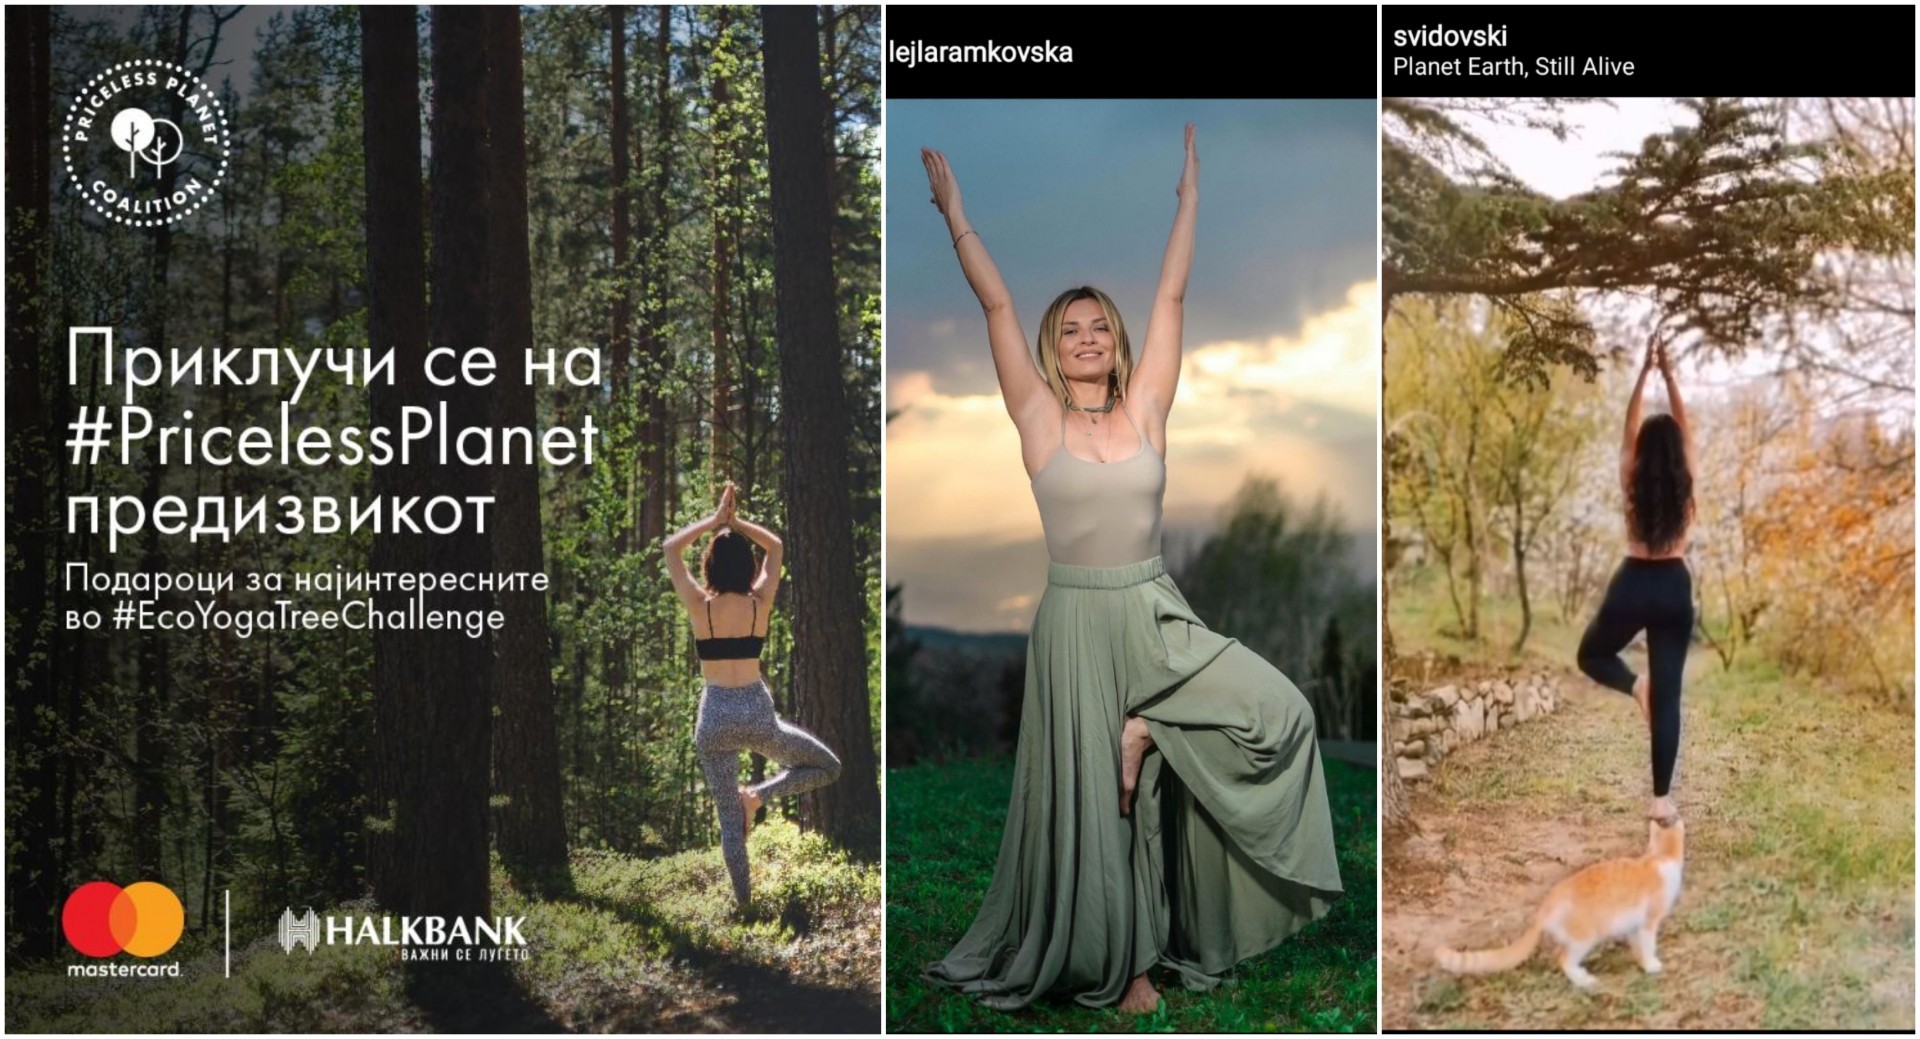 Халкбанк АД Скопје го одбележува „Денот на планетата земја“ како дел од „Priceless Planet“ кампањата